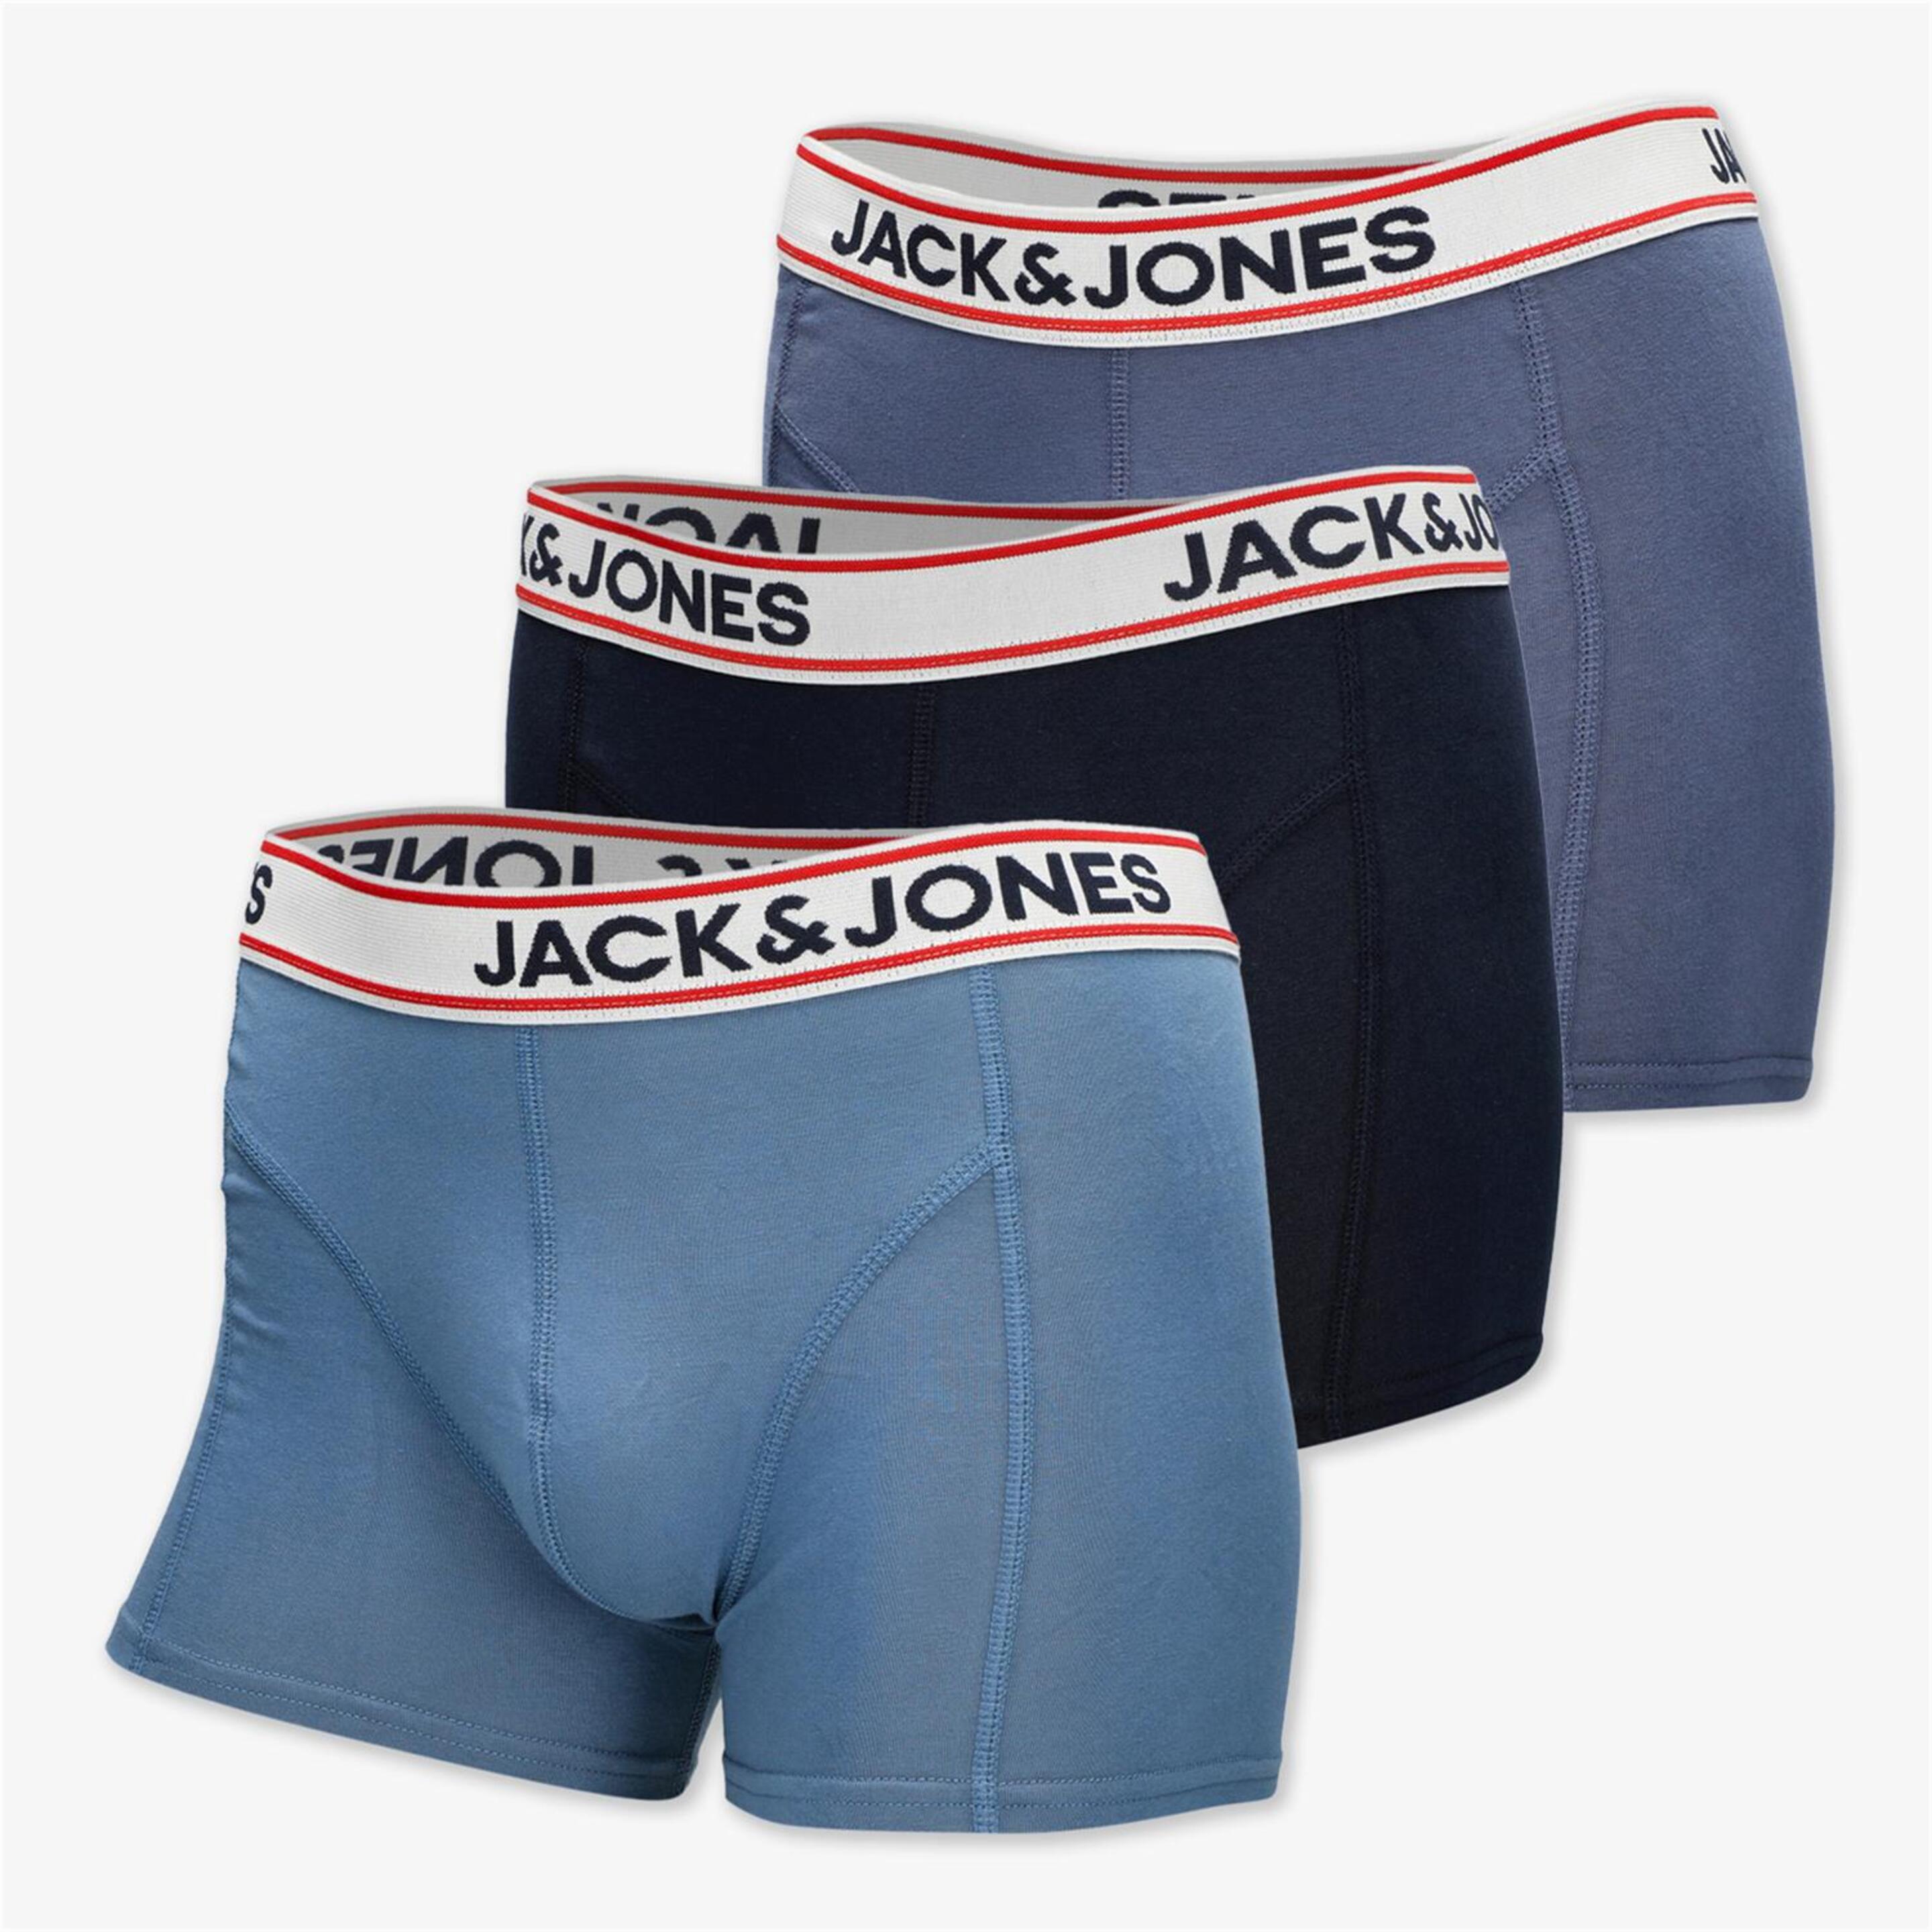 Jack & Jones Jacjake - azul - Calzoncillos Bóxer